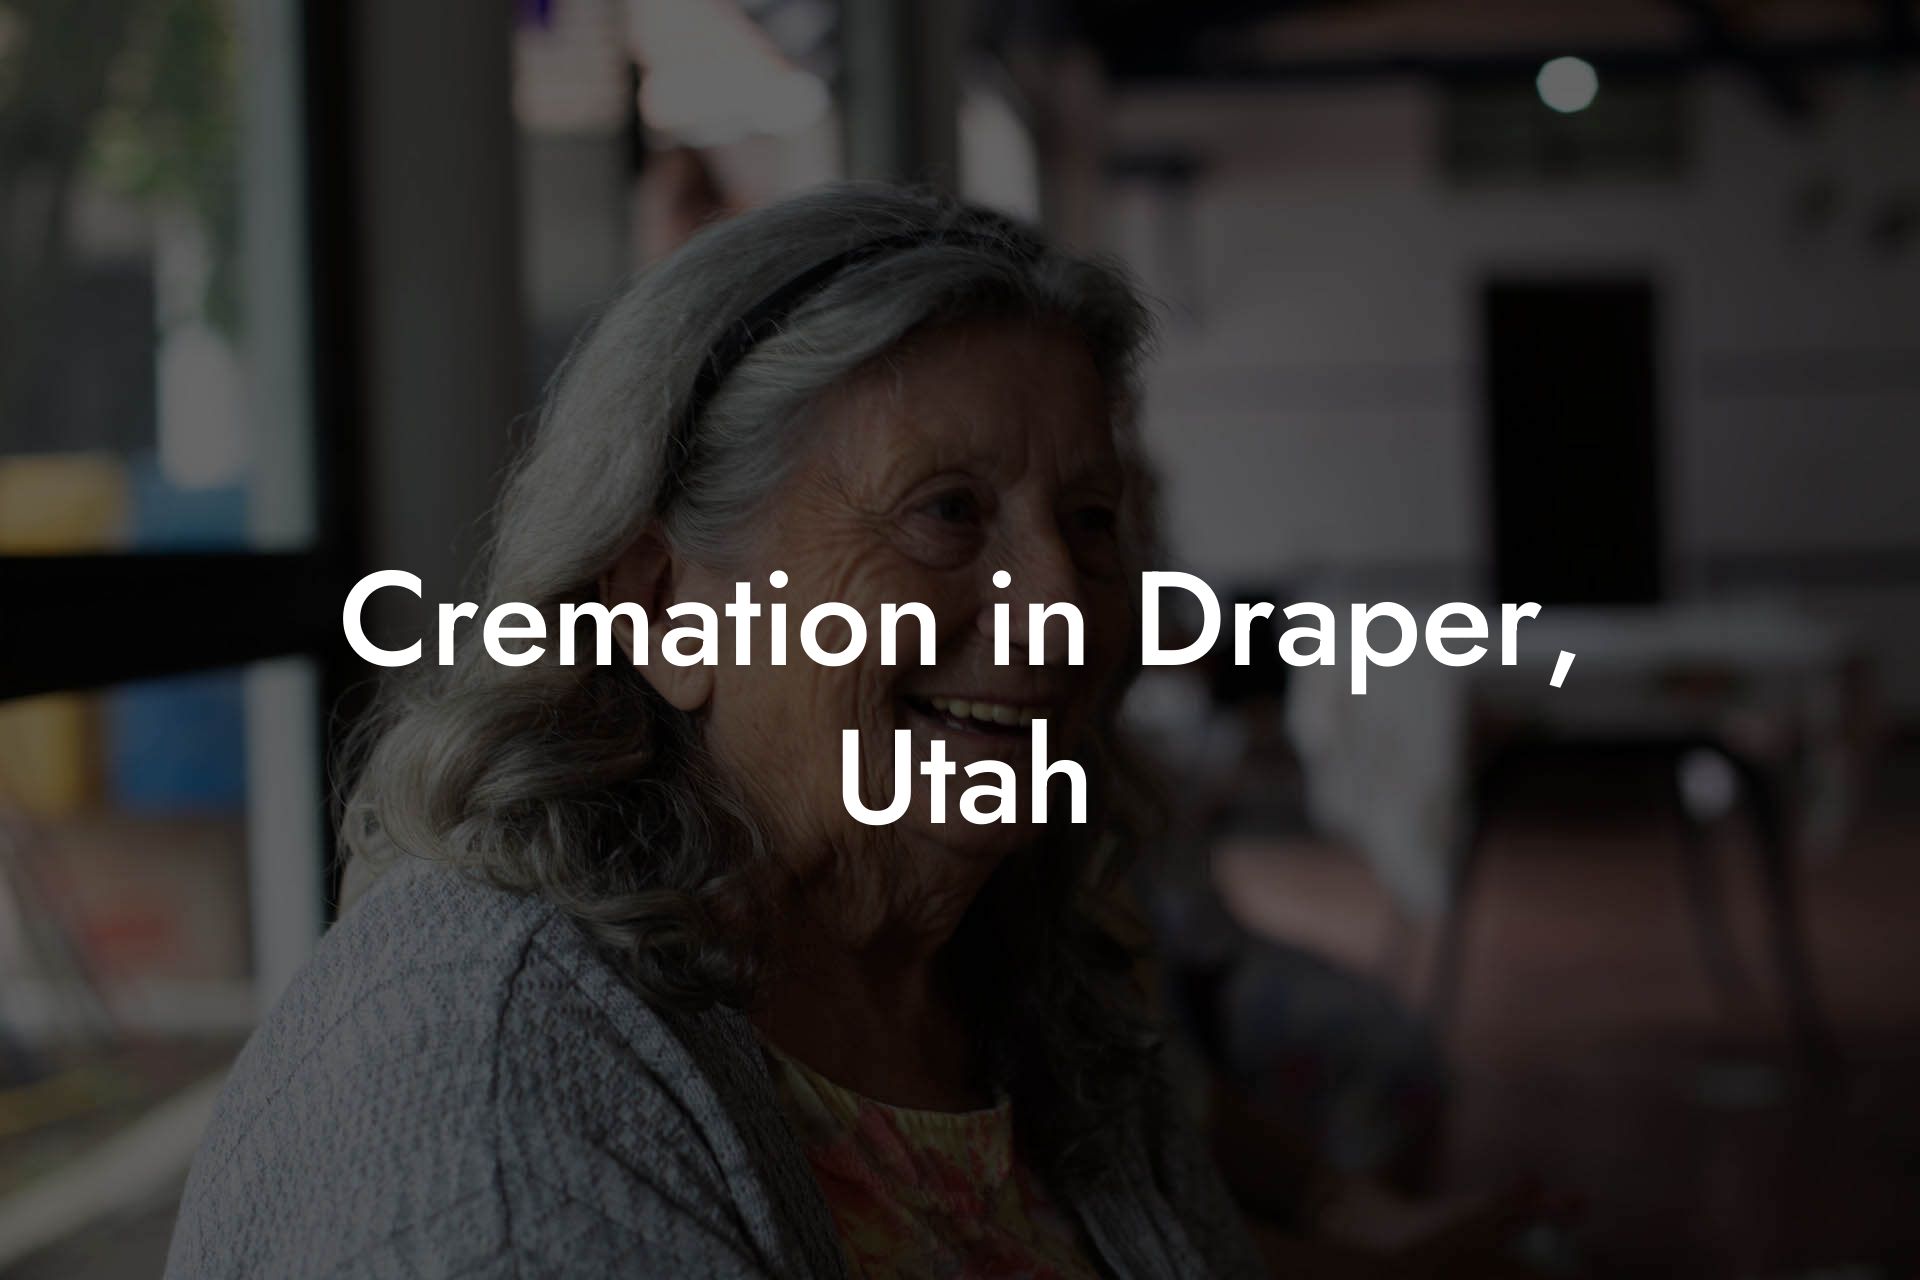 Cremation in Draper, Utah